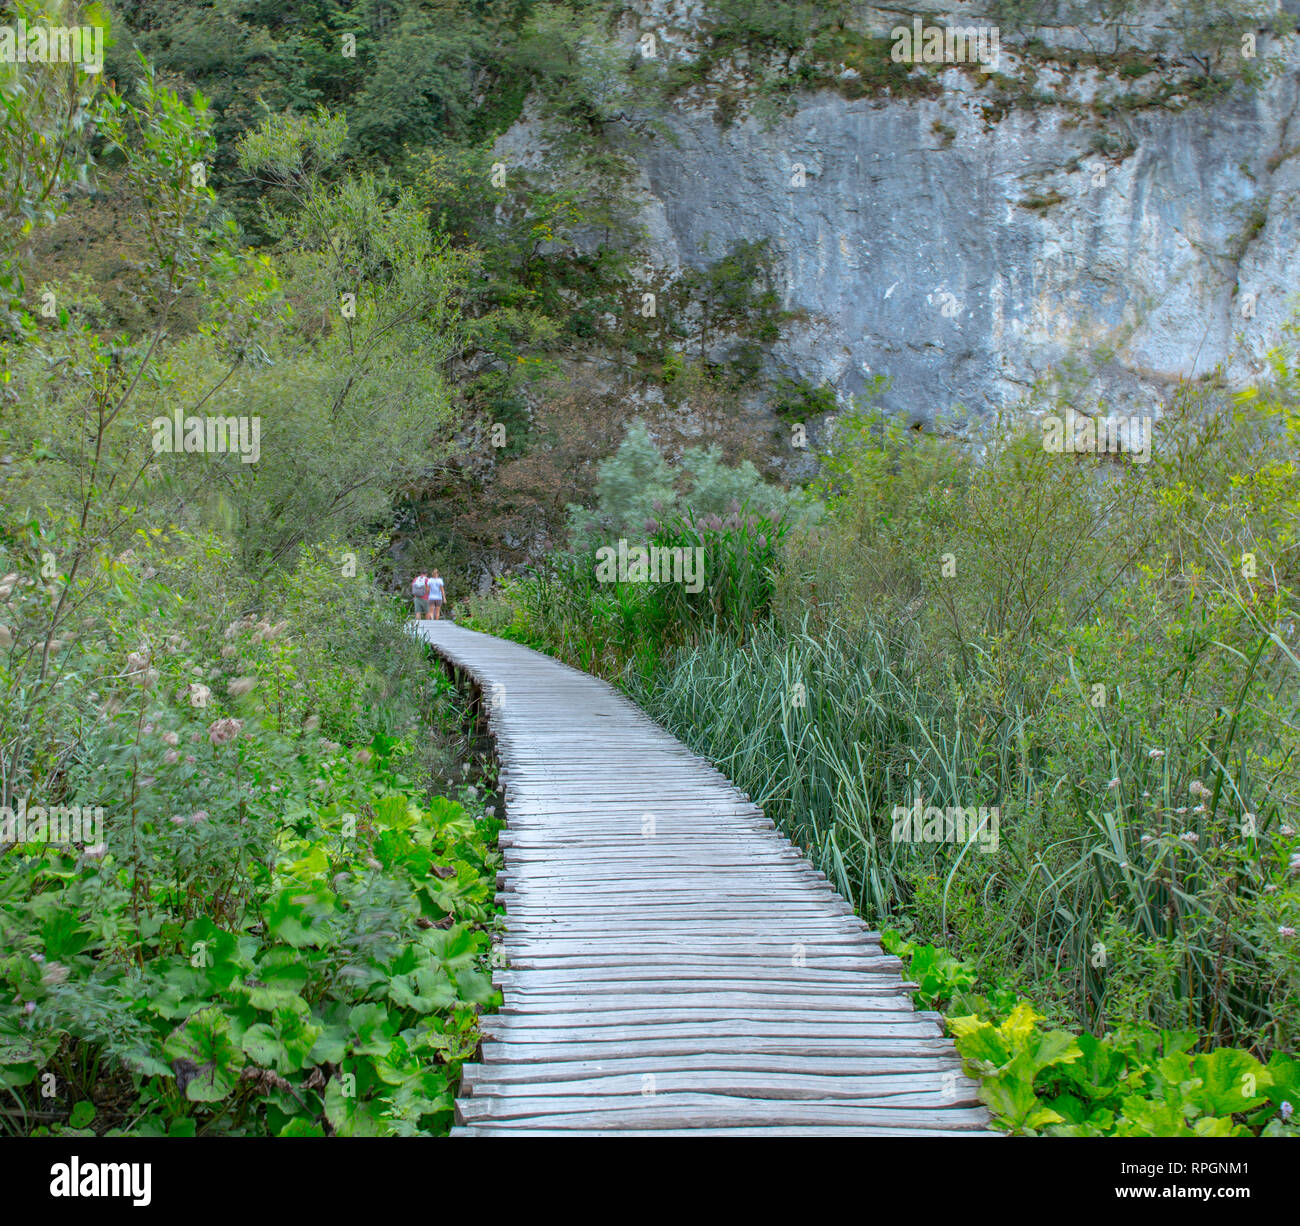 Uno de los muchos senderos de madera que llevan miles de visitantes a través de la belleza del parque nacional de los Lagos de Plitvice en Croacia Foto de stock